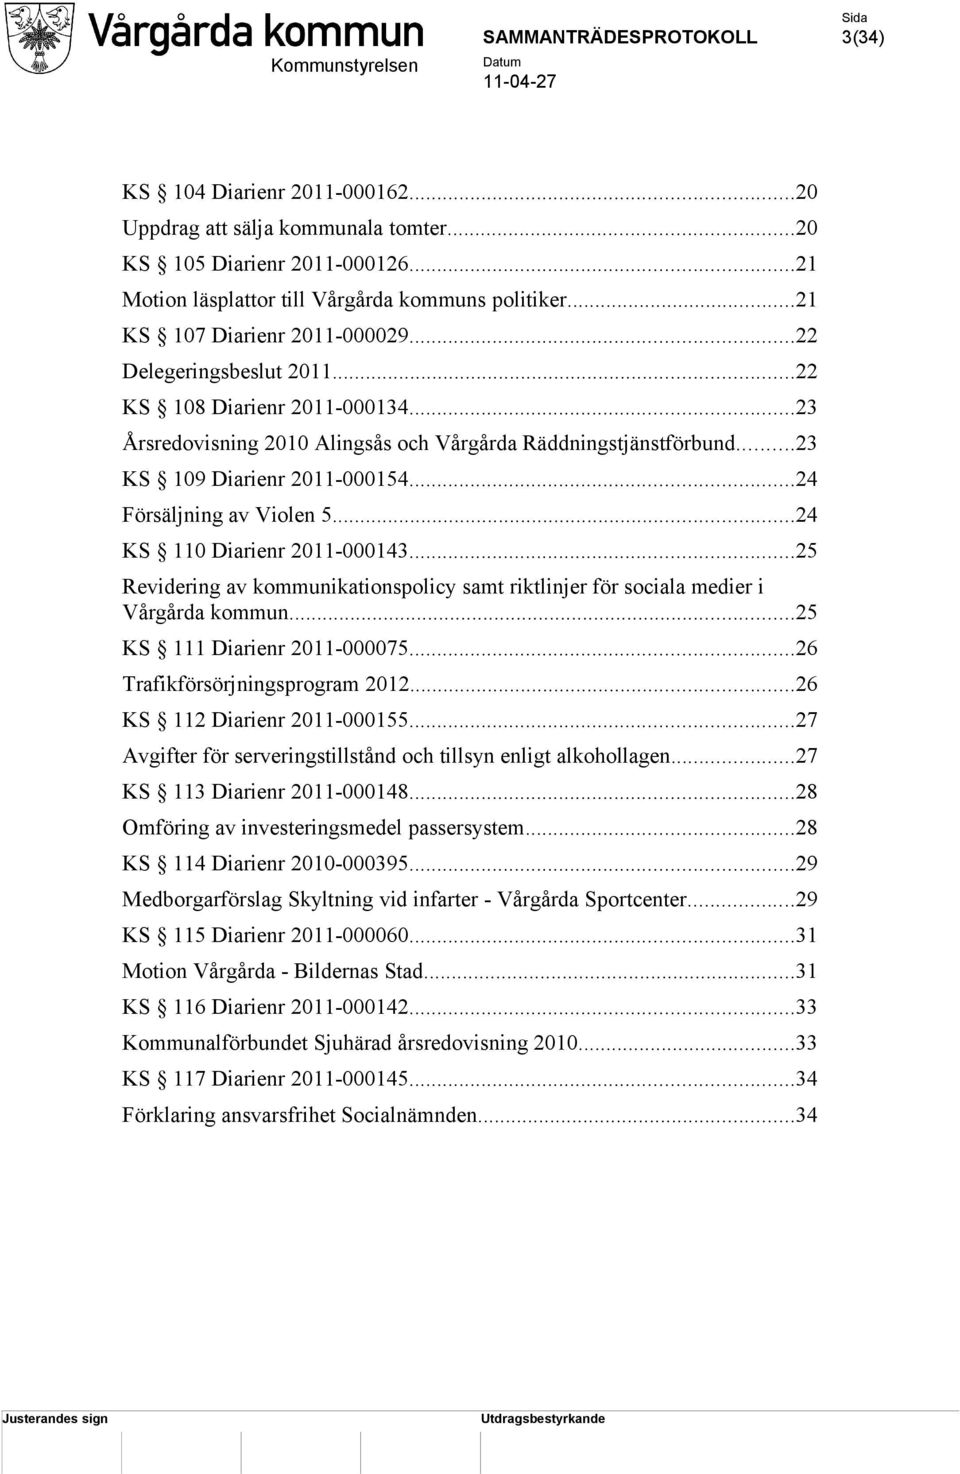 ..24 KS 110 Diarienr 2011-000143...25 Revidering av kommunikationspolicy samt riktlinjer för sociala medier i Vårgårda kommun...25 KS 111 Diarienr 2011-000075...26 Trafikförsörjningsprogram 2012.